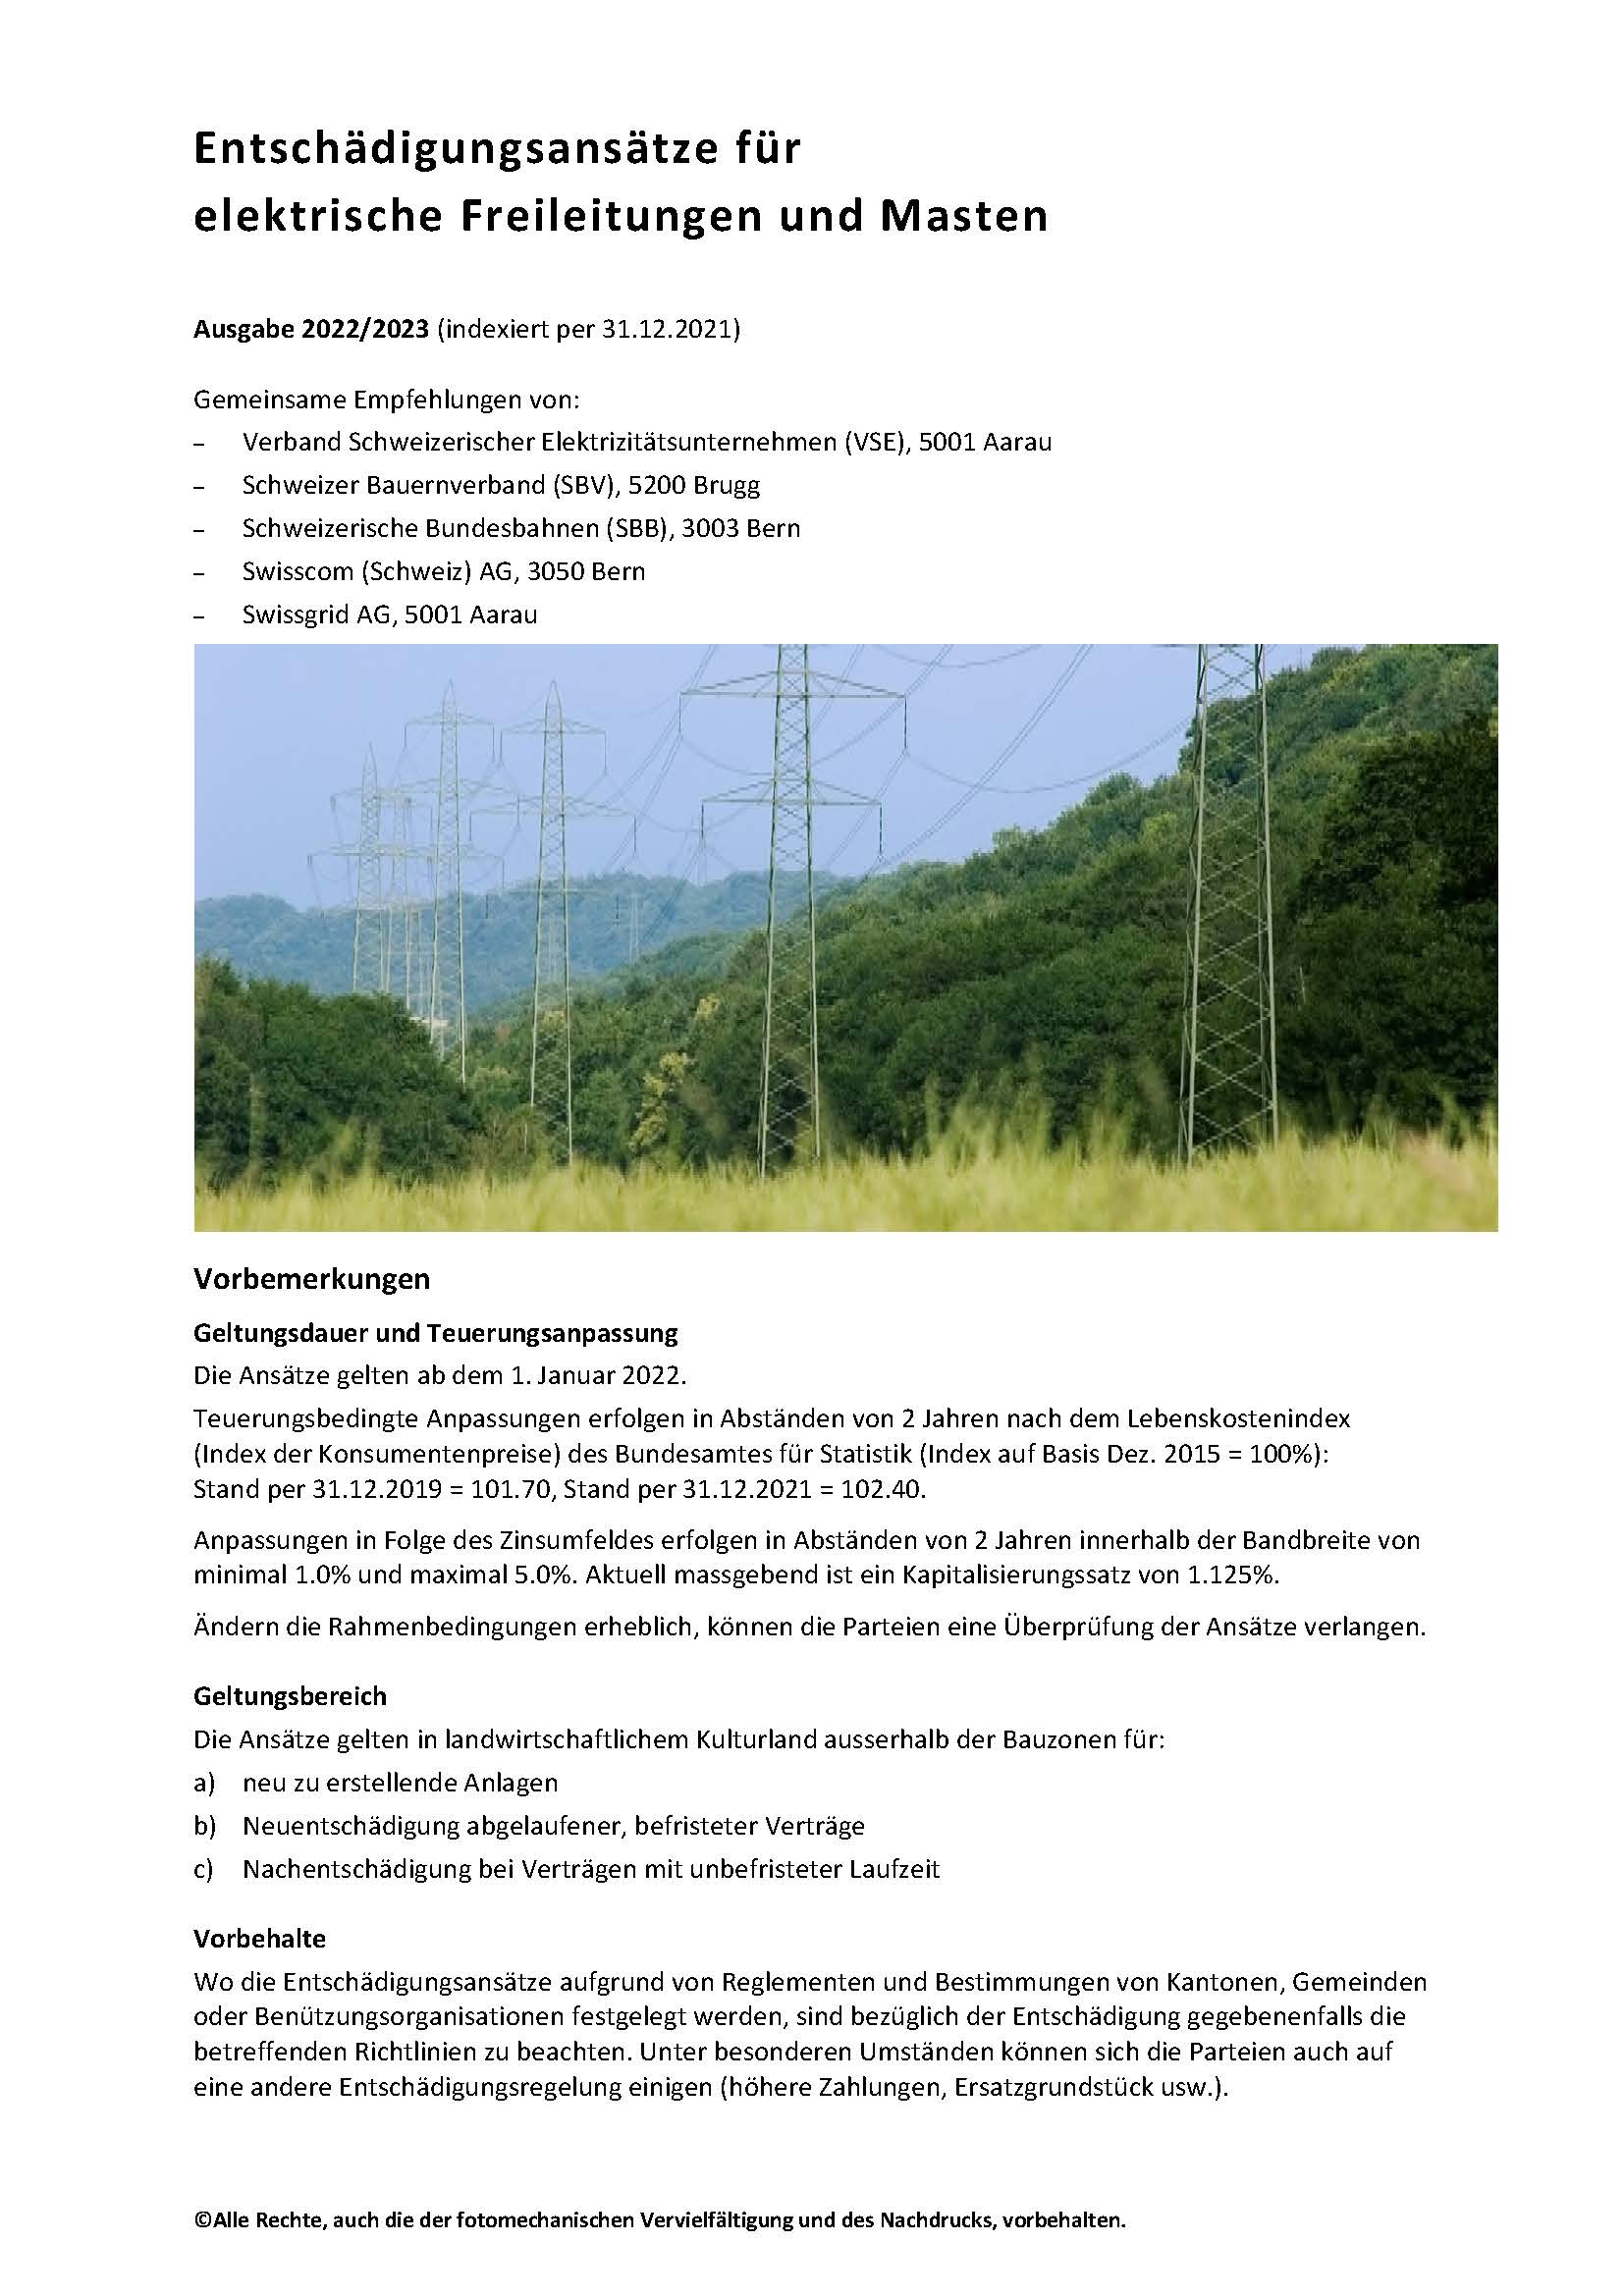 Entschädigungsansätze für elektrische Freileitungen und Masten - Ausgabe 2022/2023